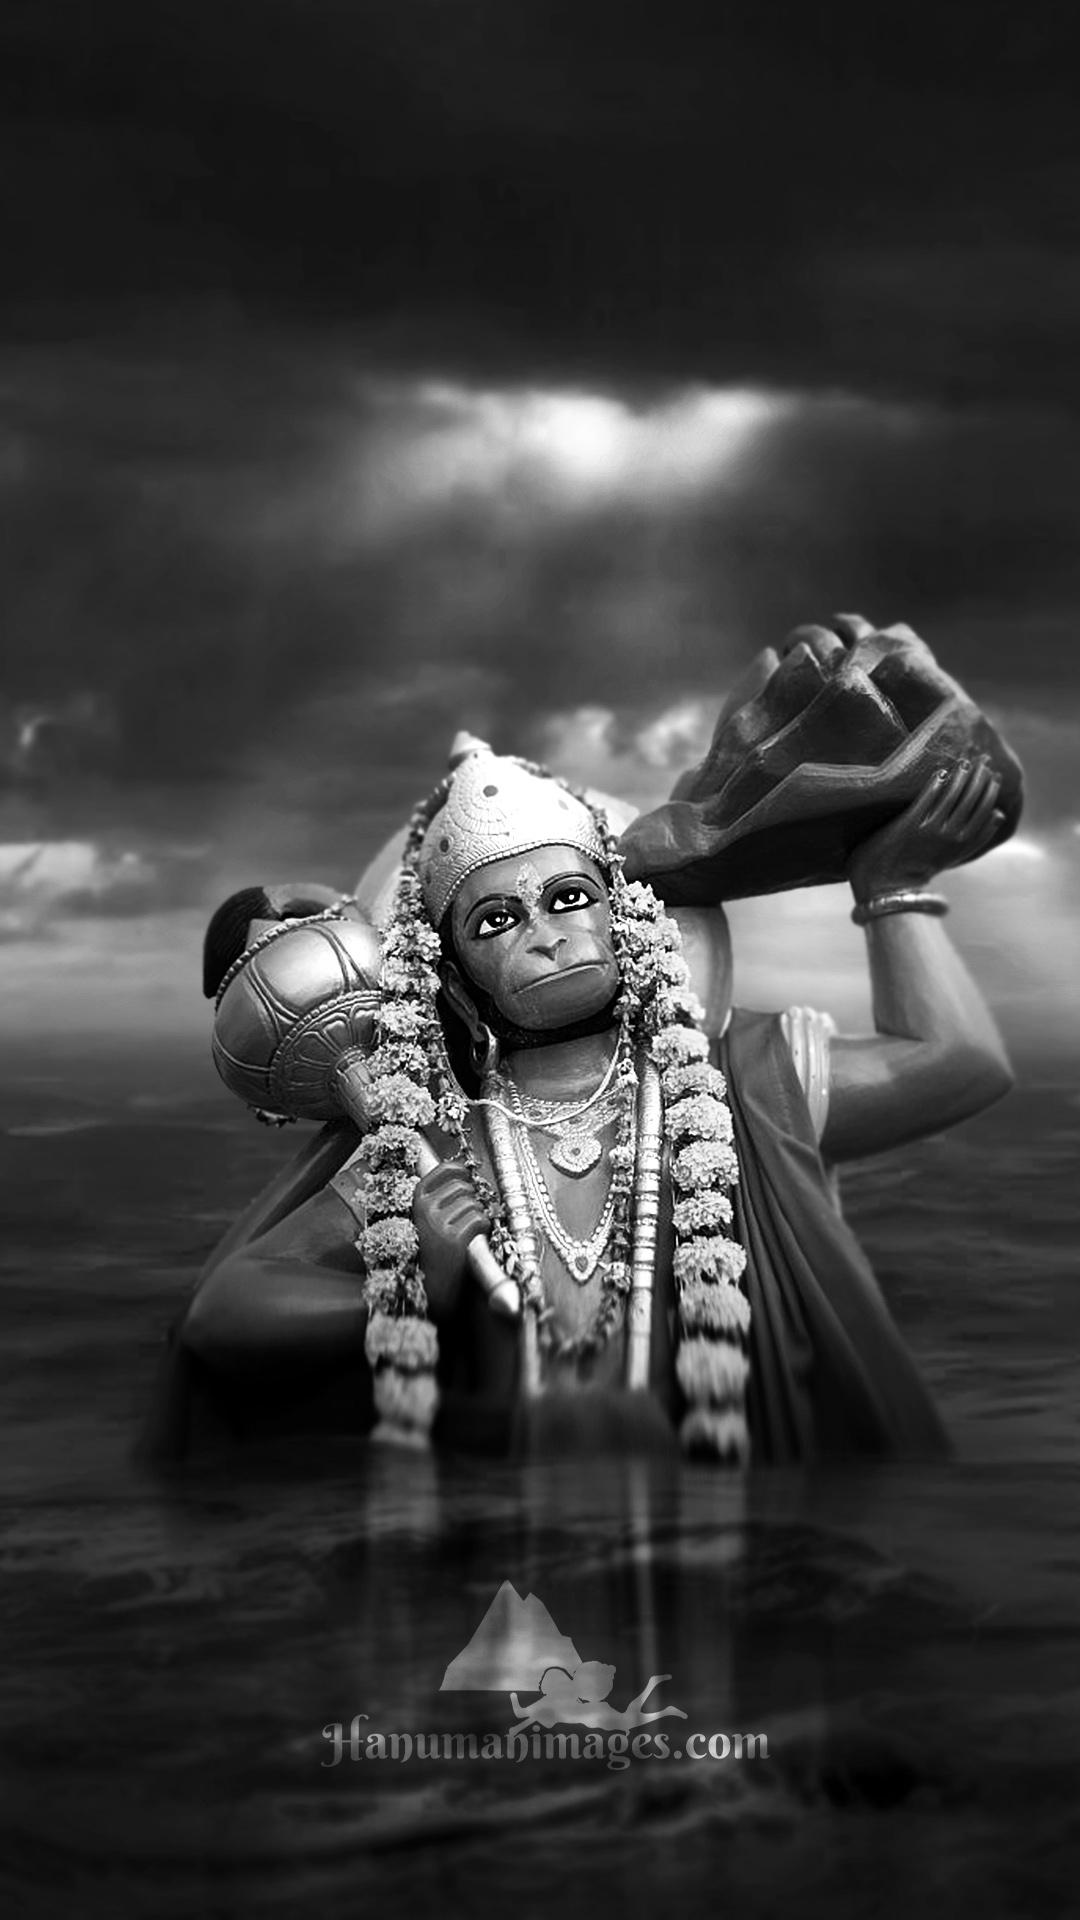 🔥 Sketch Black Hanuman Images Photo | MyGodImages